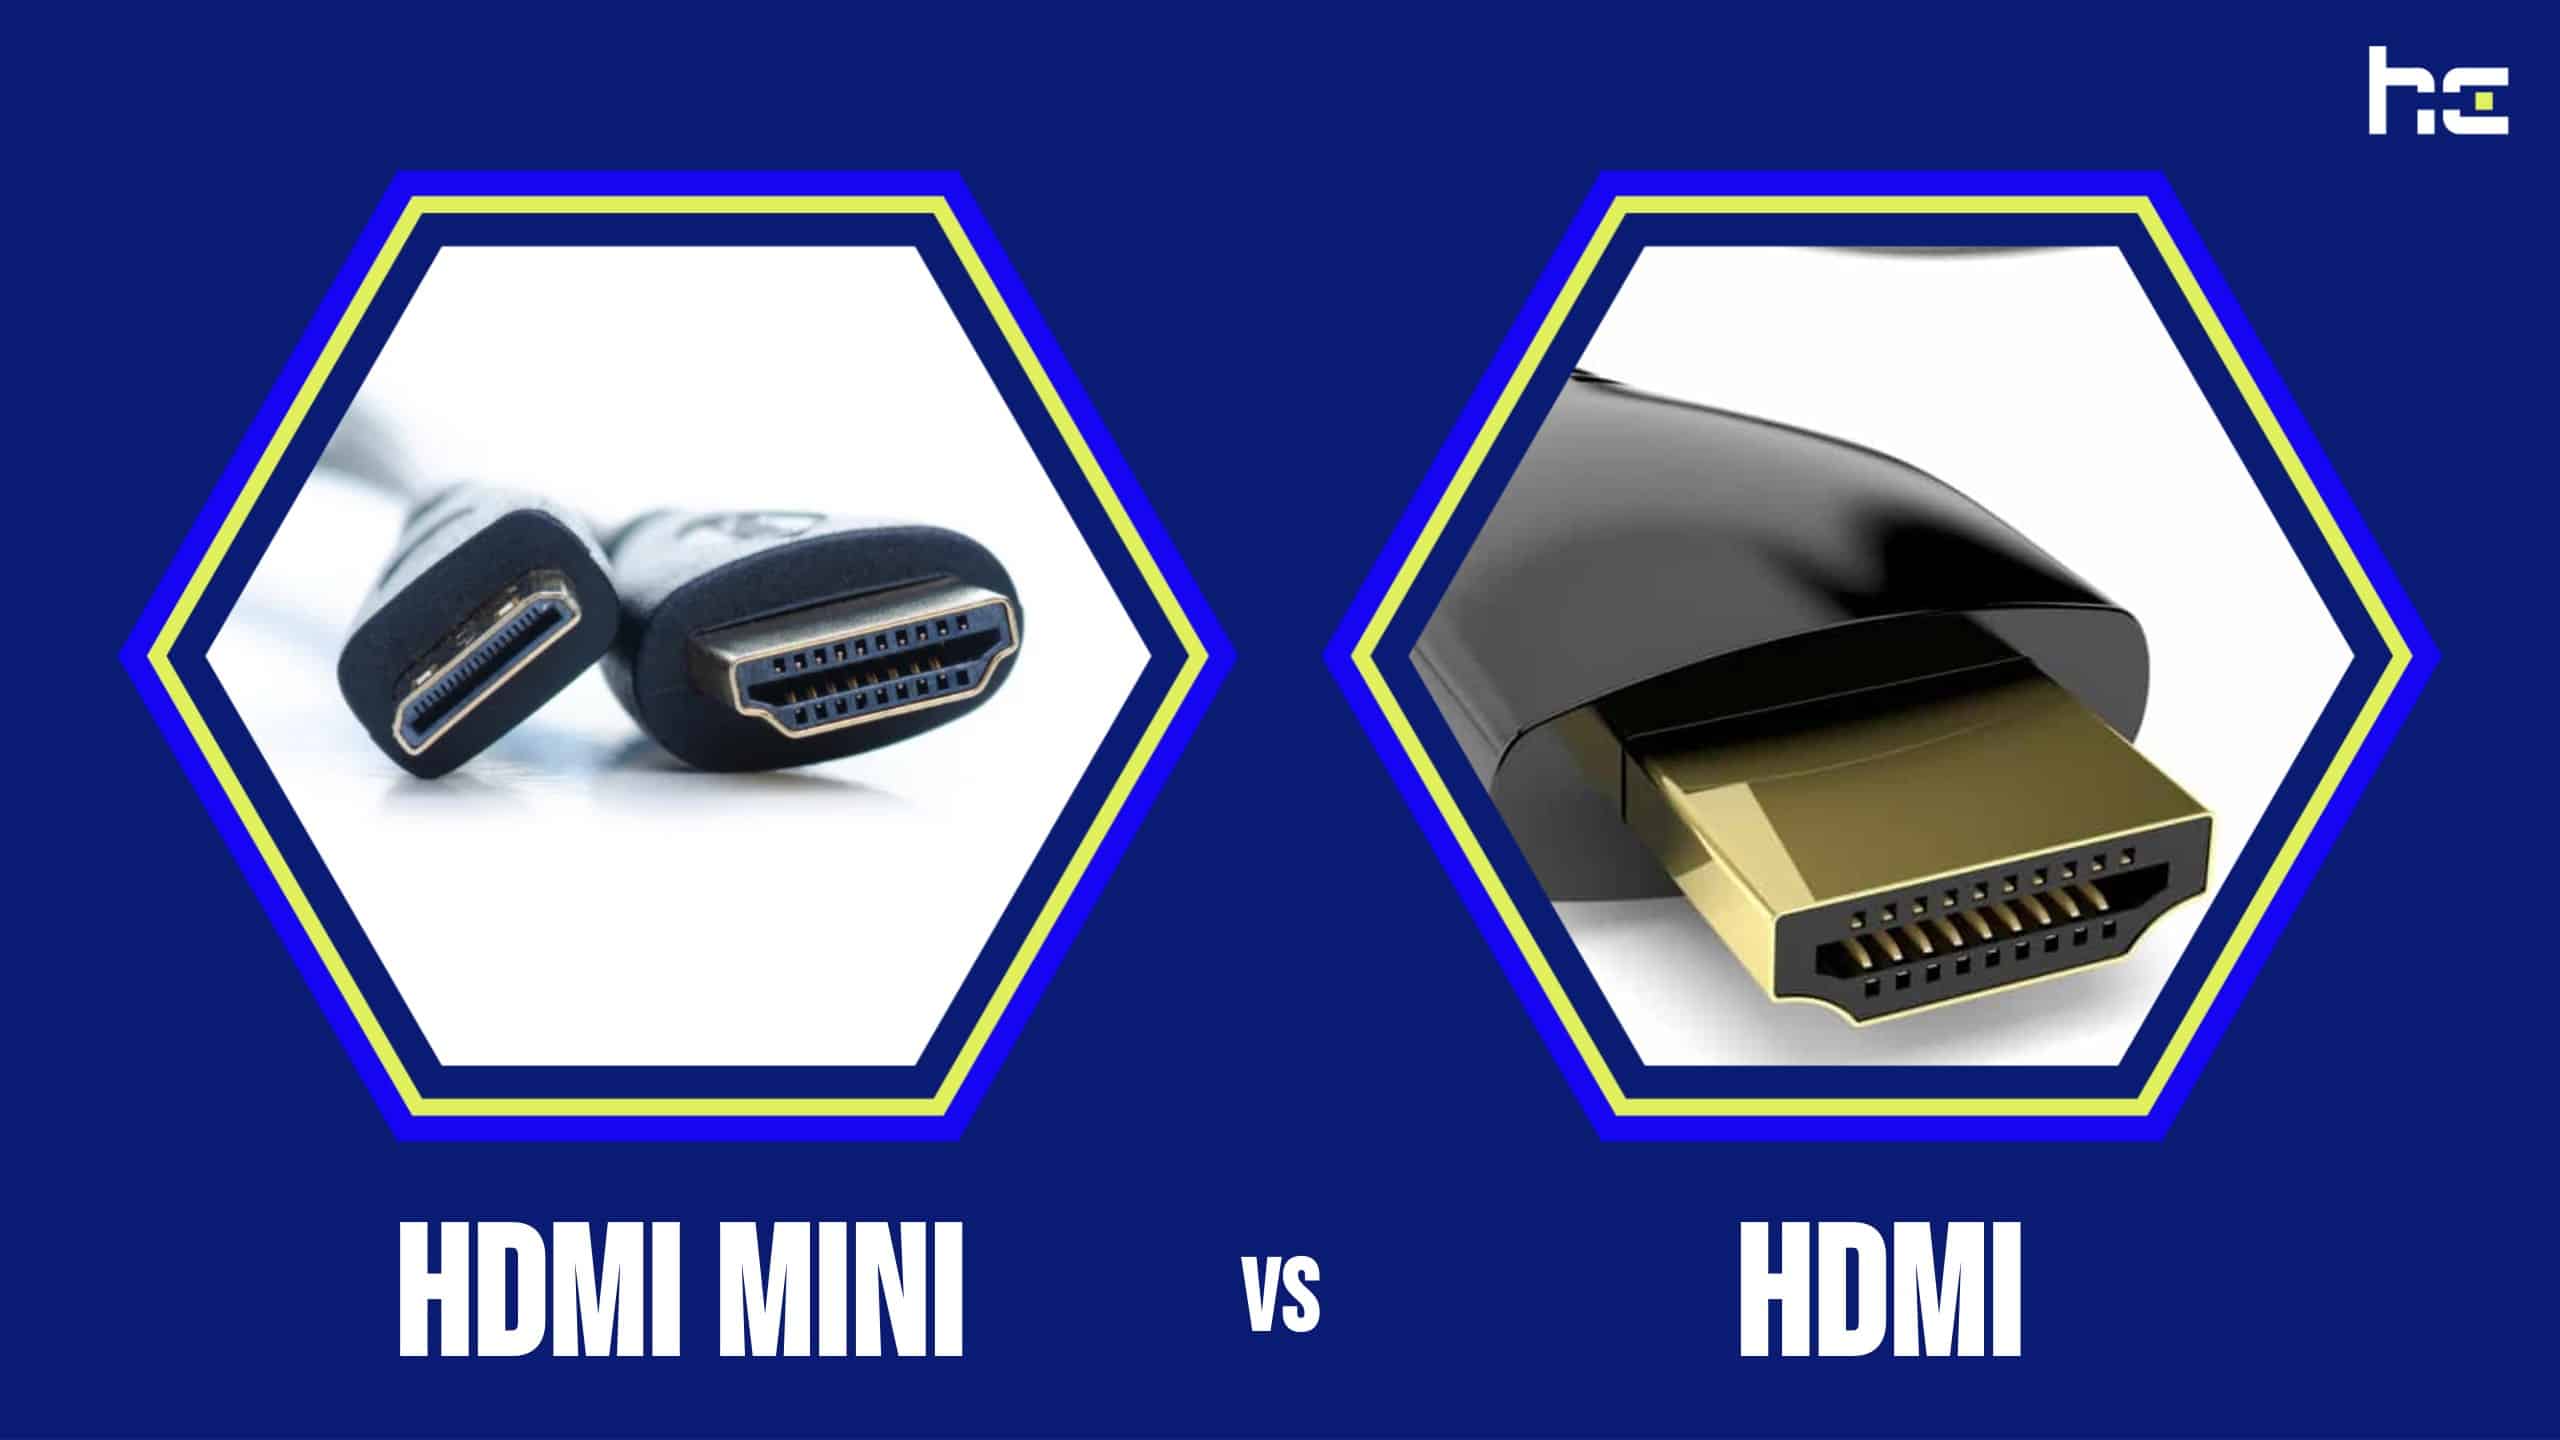 Câble Mini HDMI vers HDMI HighSpeed HQ haut définition